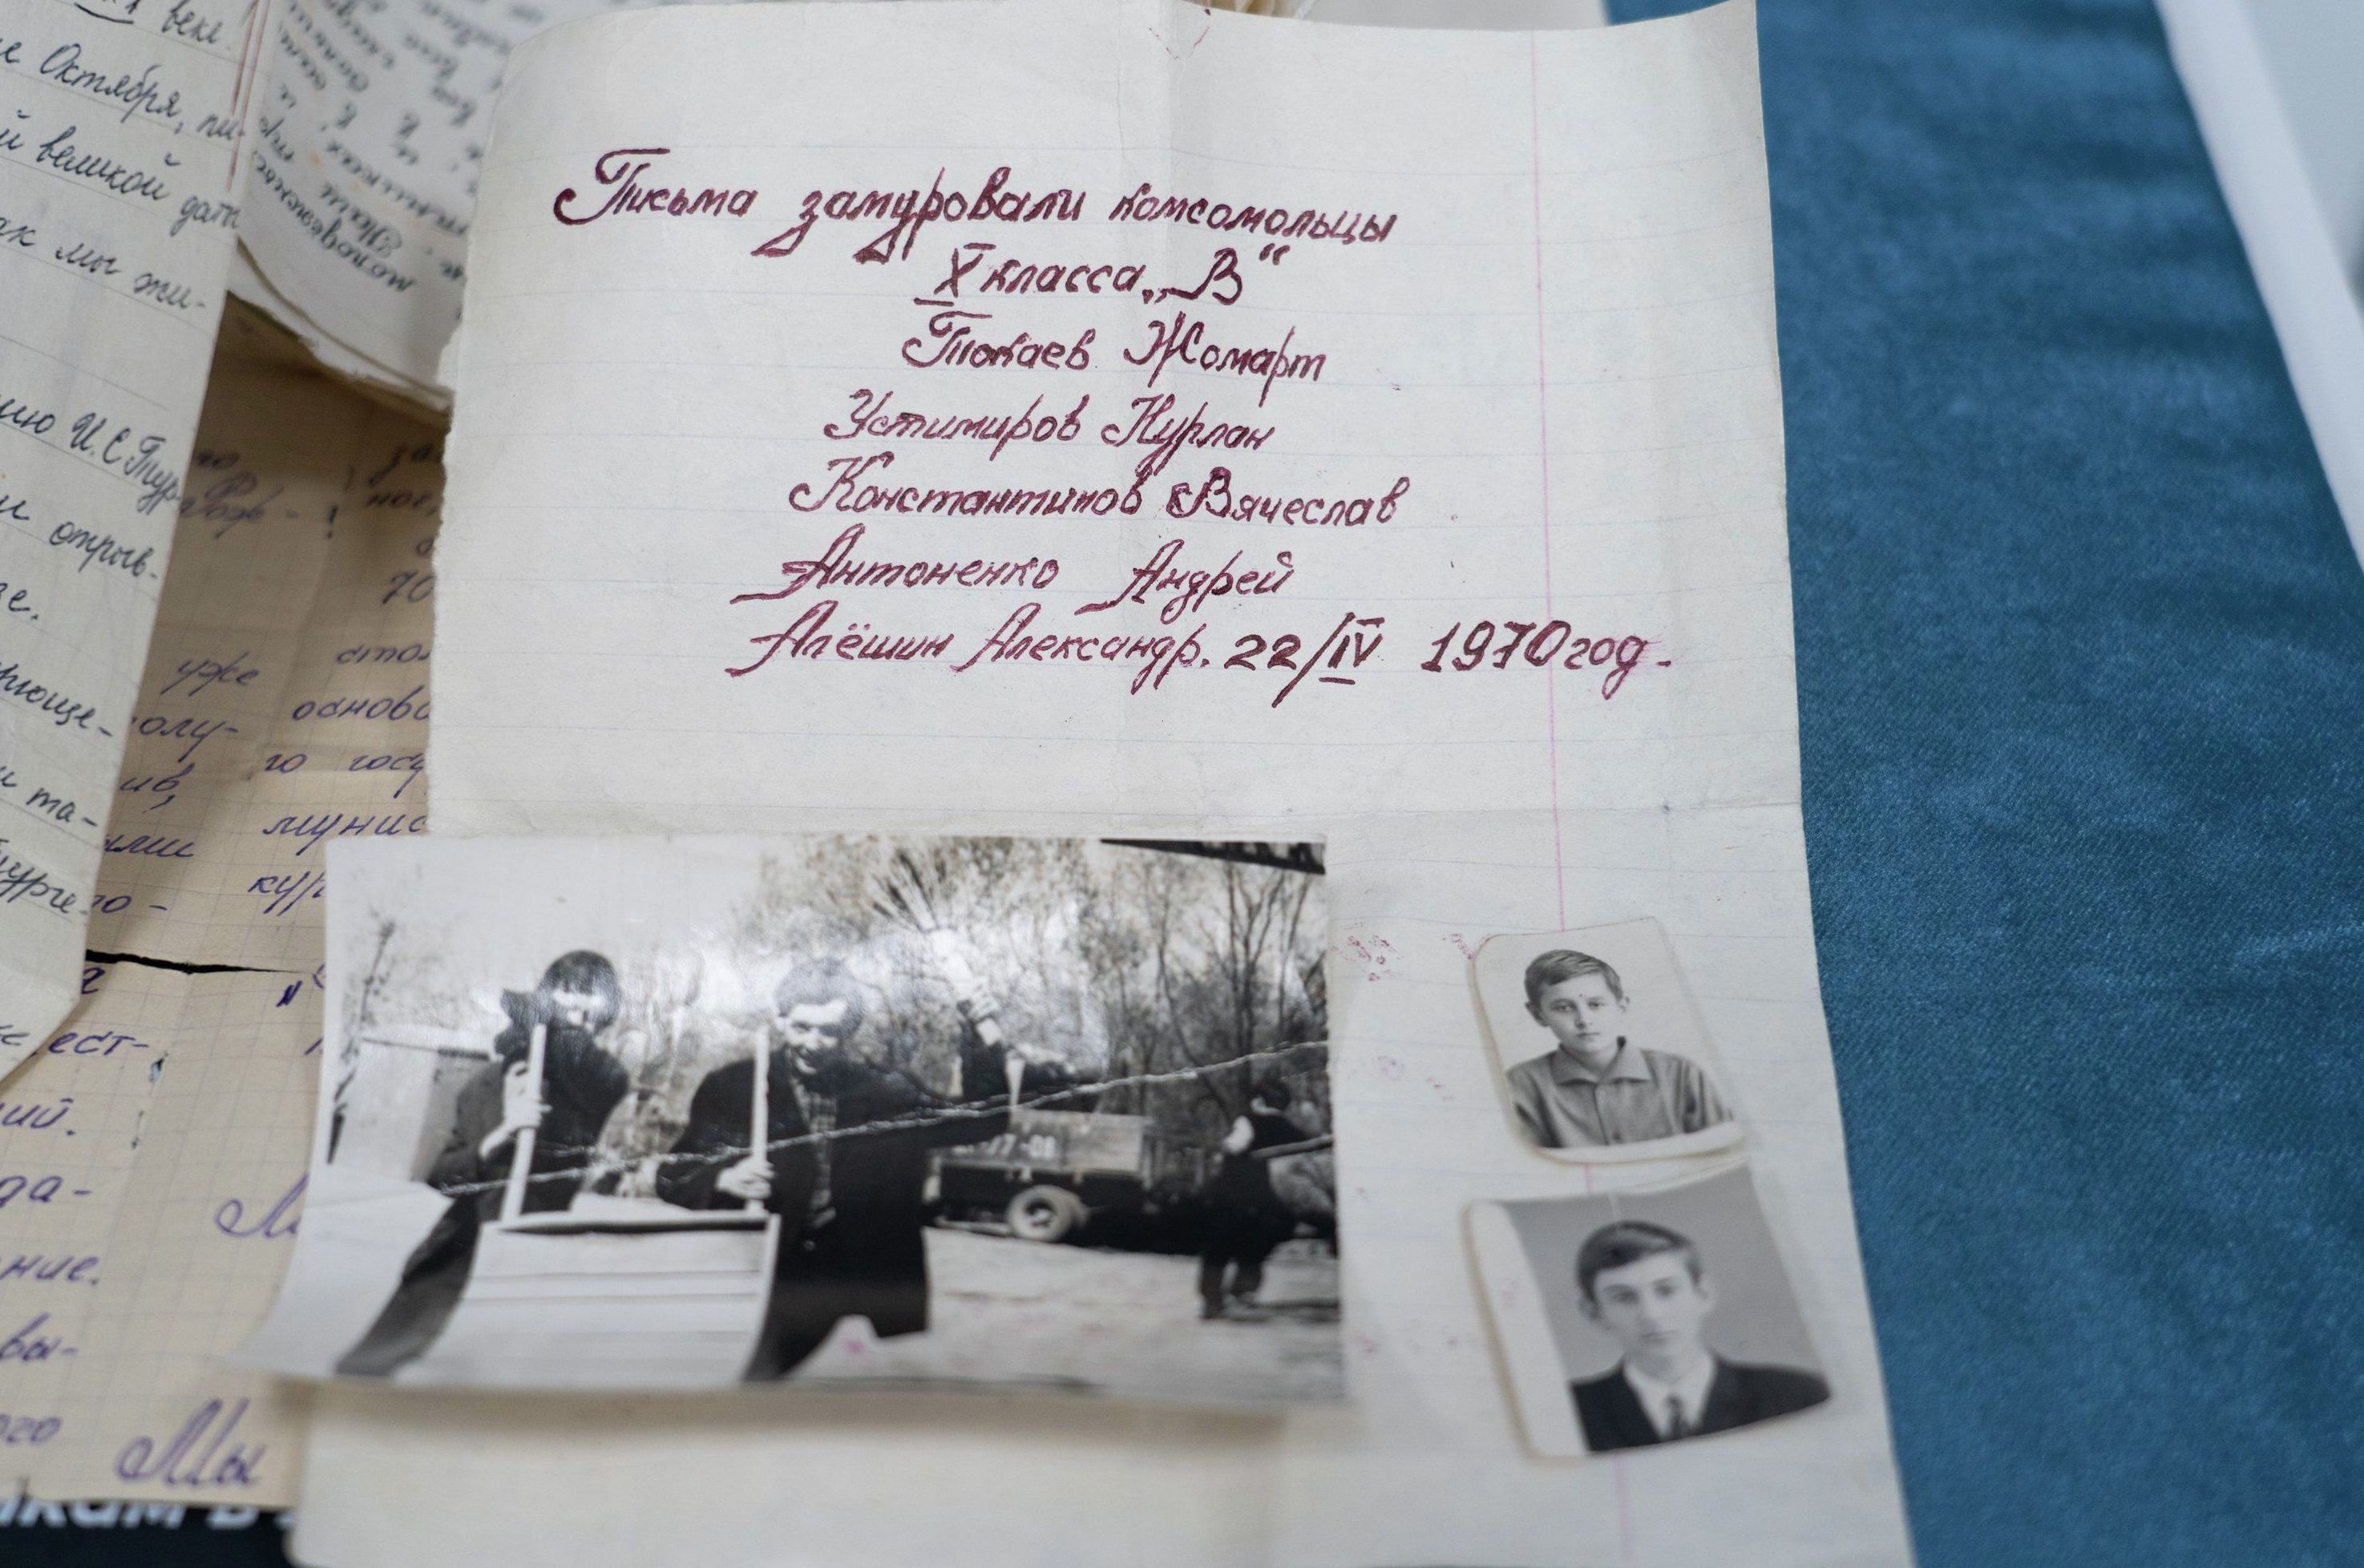 В те годы президент Казахстана подписывался как Жомарт Токаев